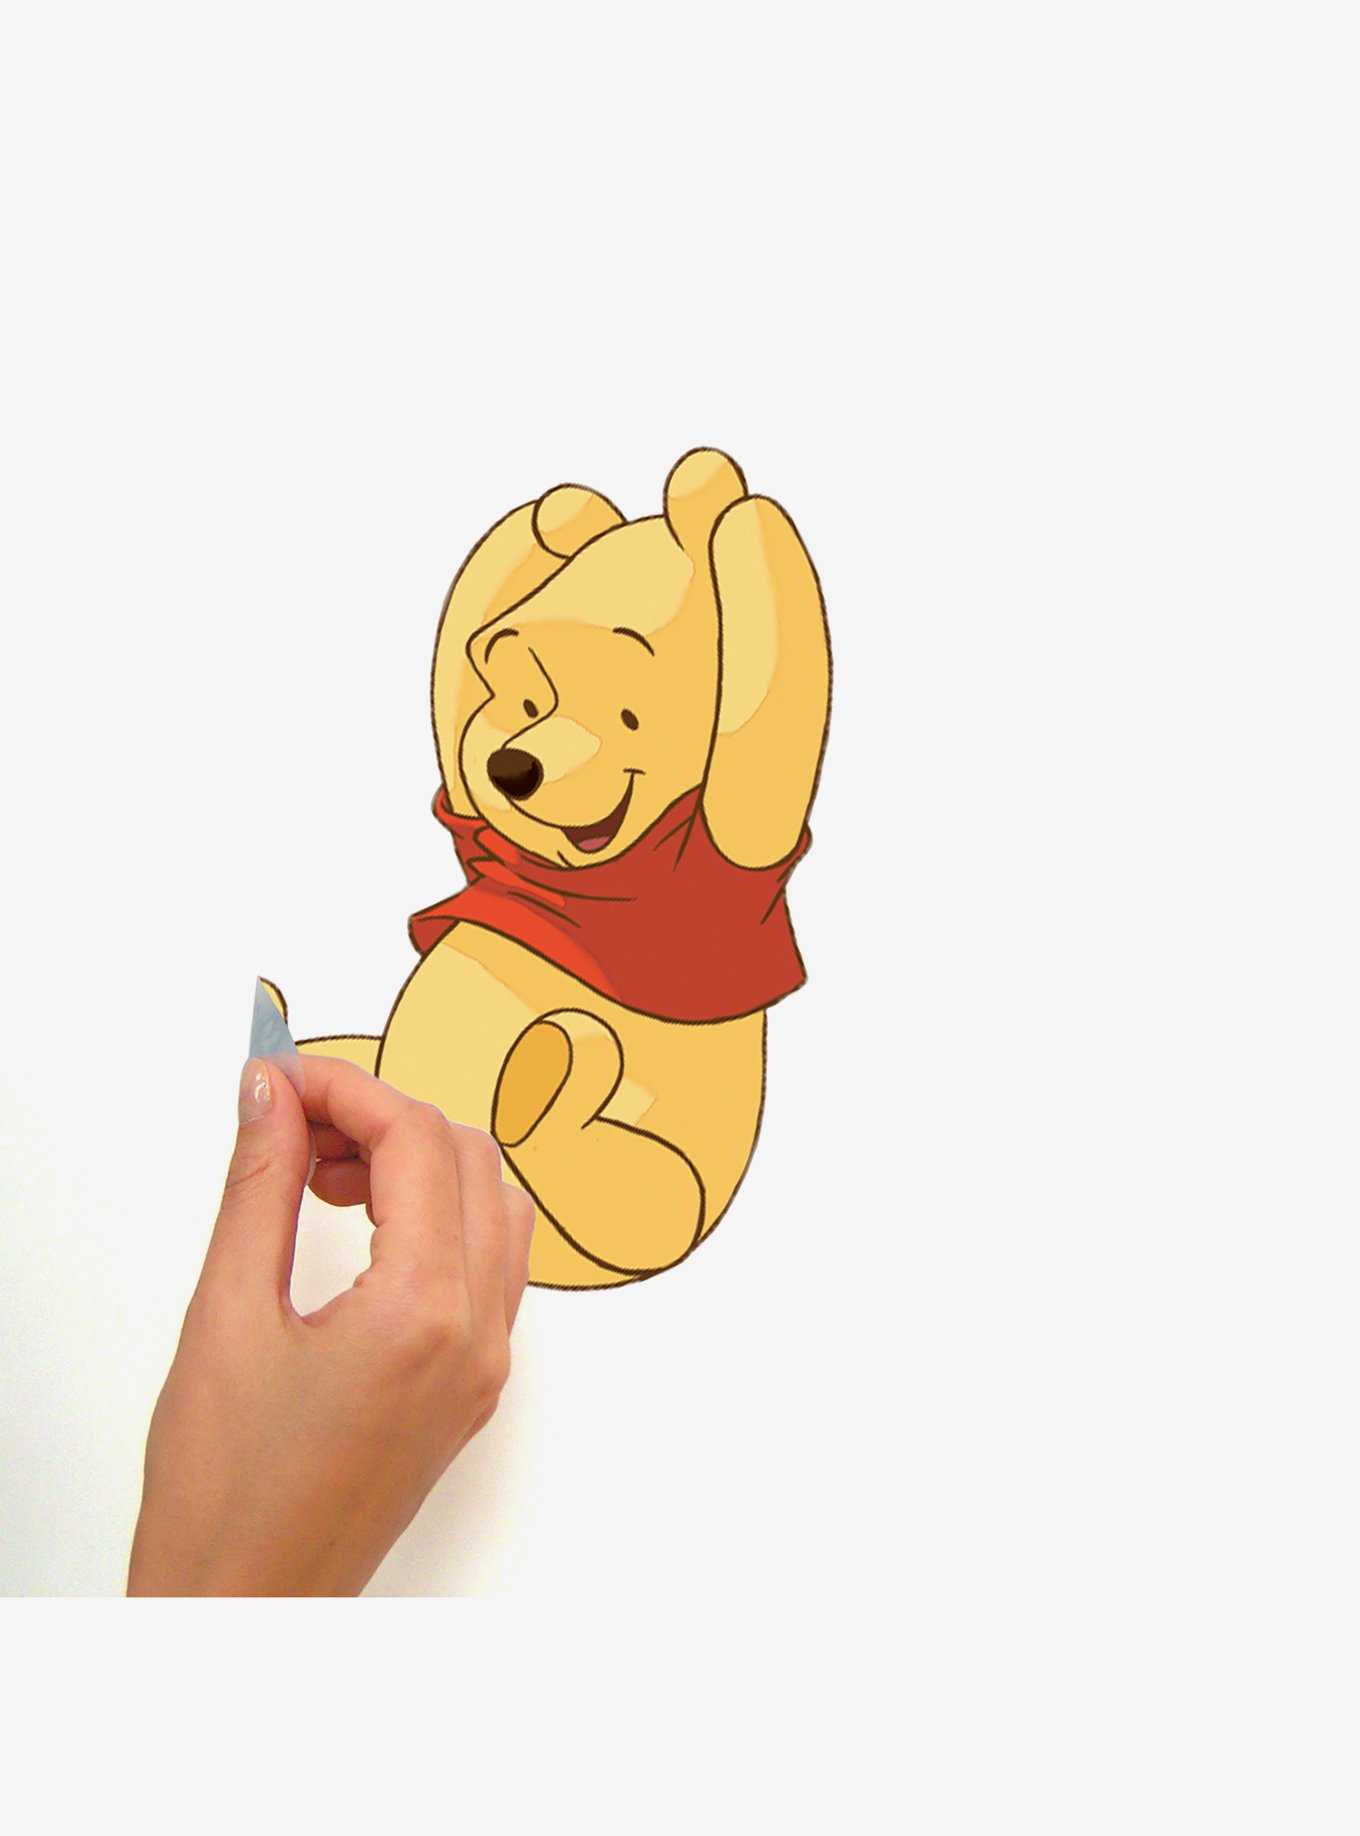 Disney Winnie The Pooh & Friends Peel & Stick Wall Decal, , hi-res